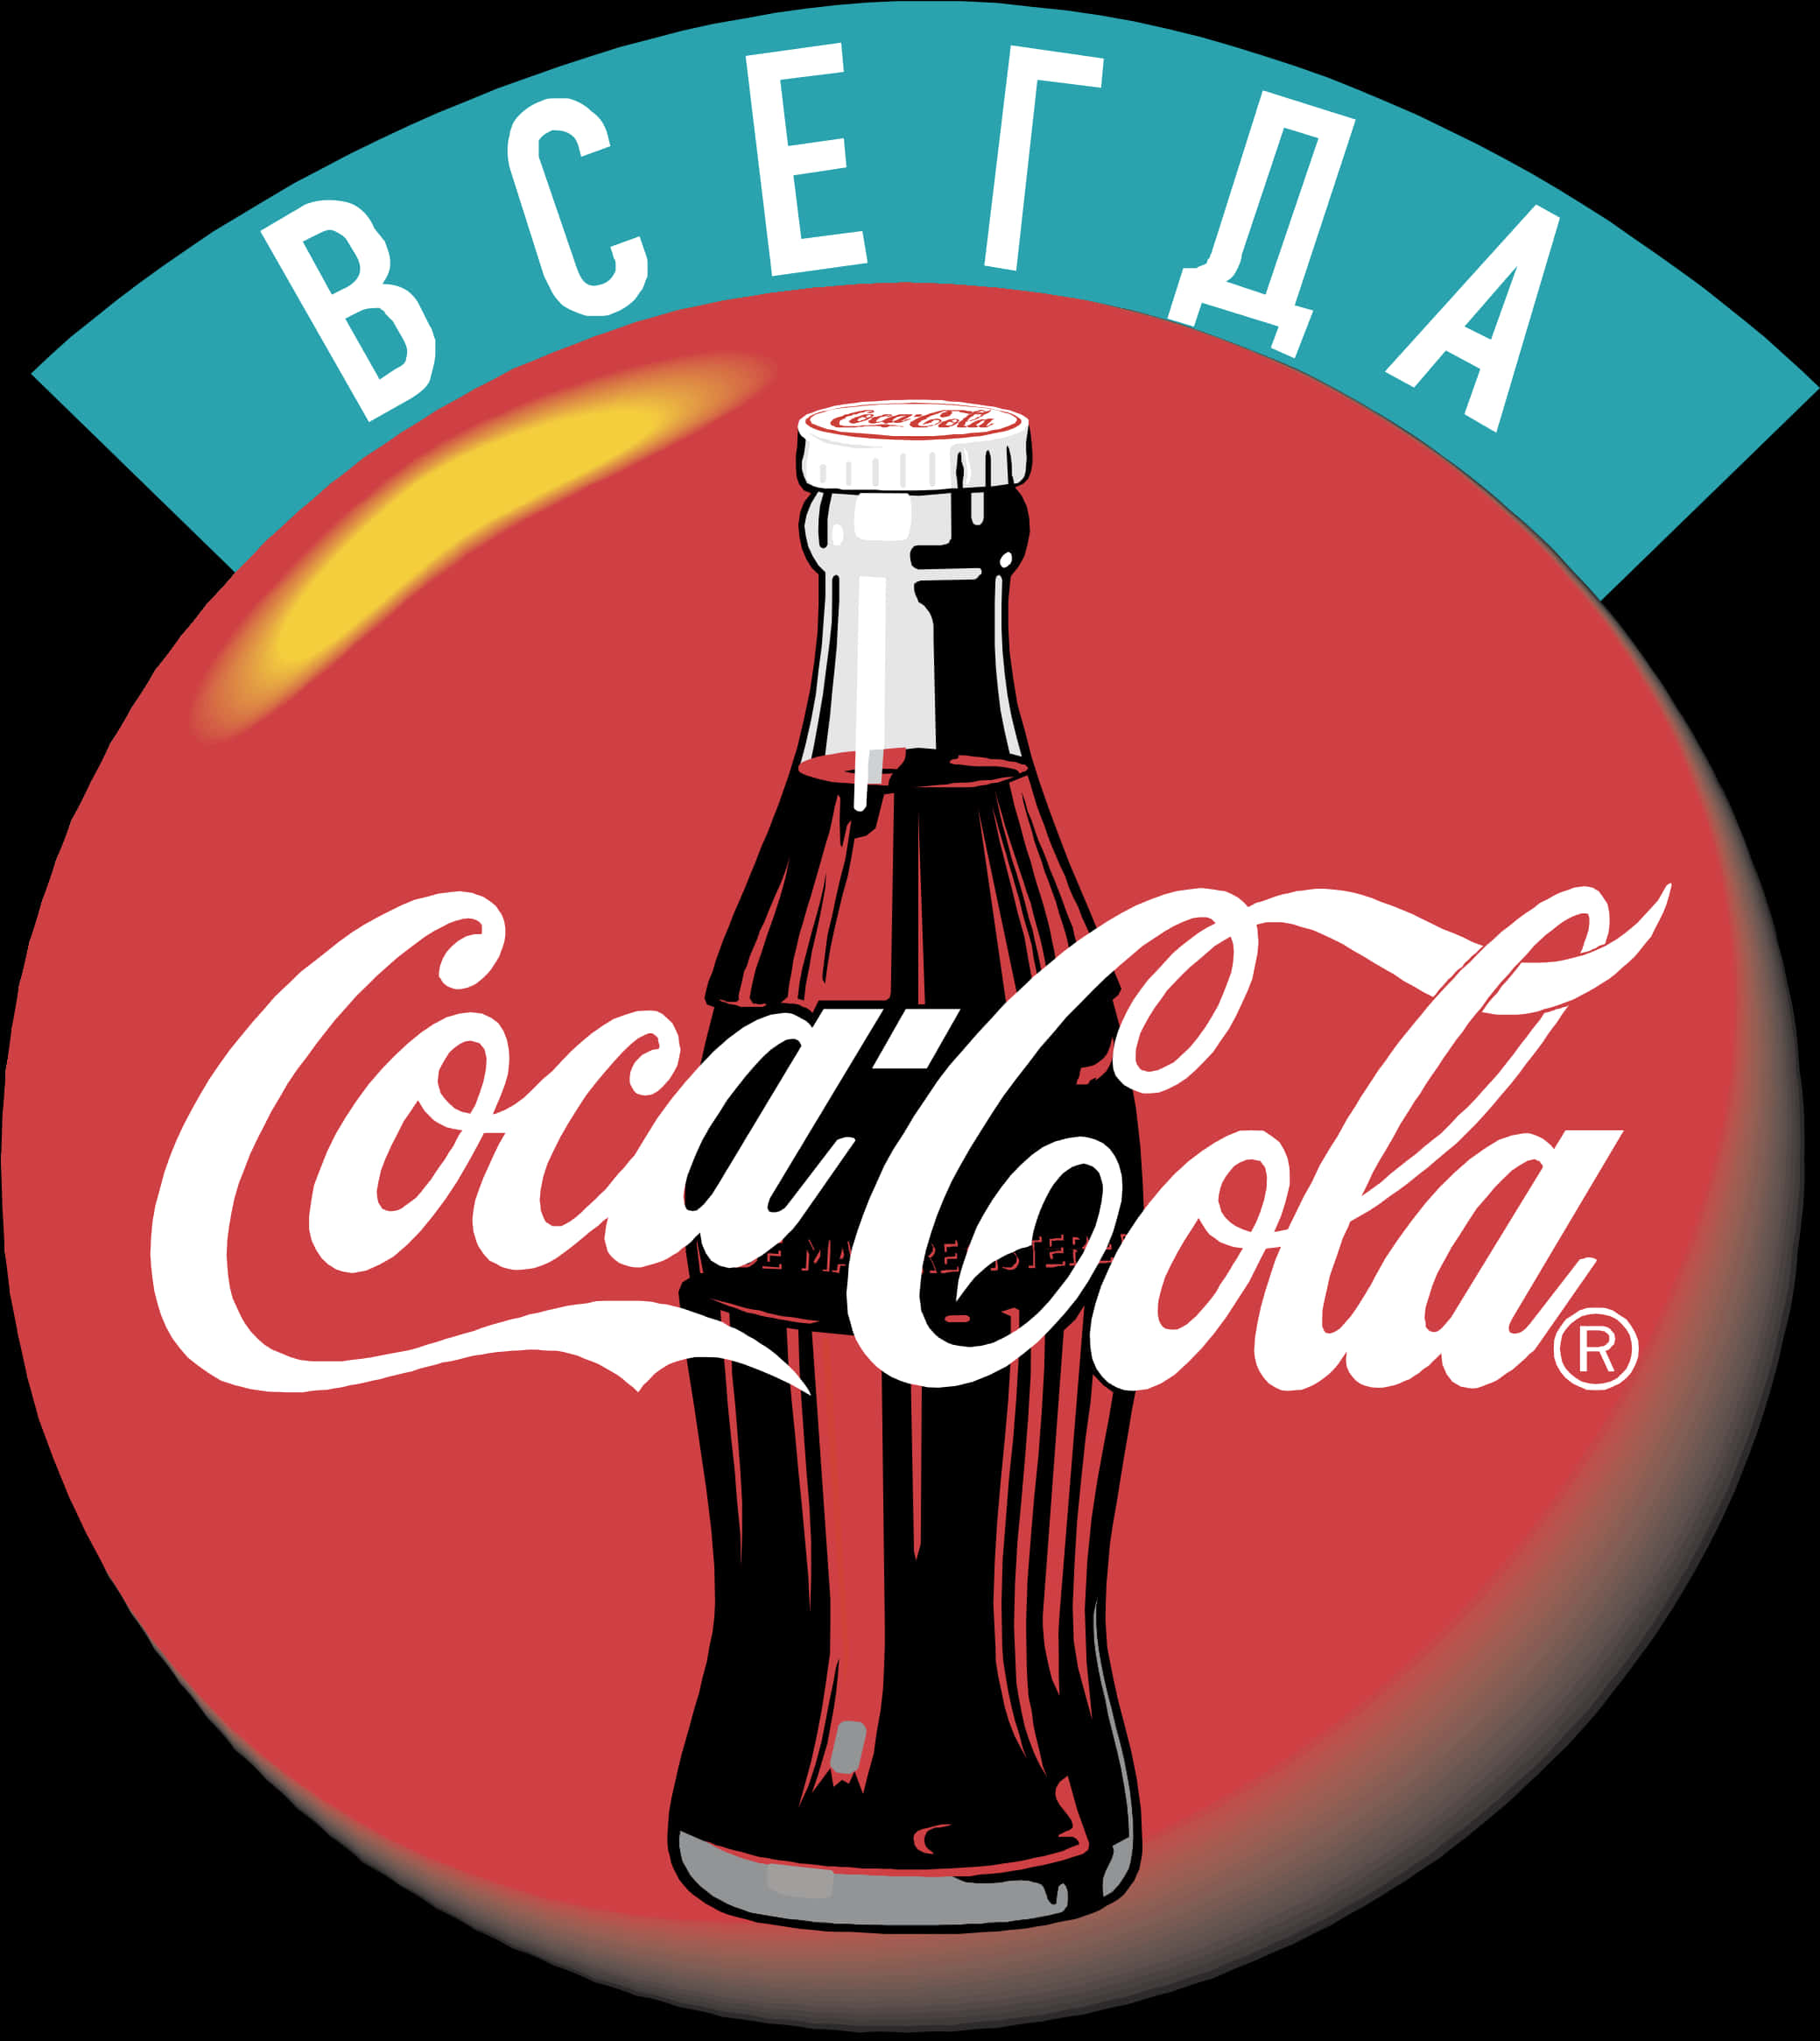 A Logo Of A Bottle Of Soda